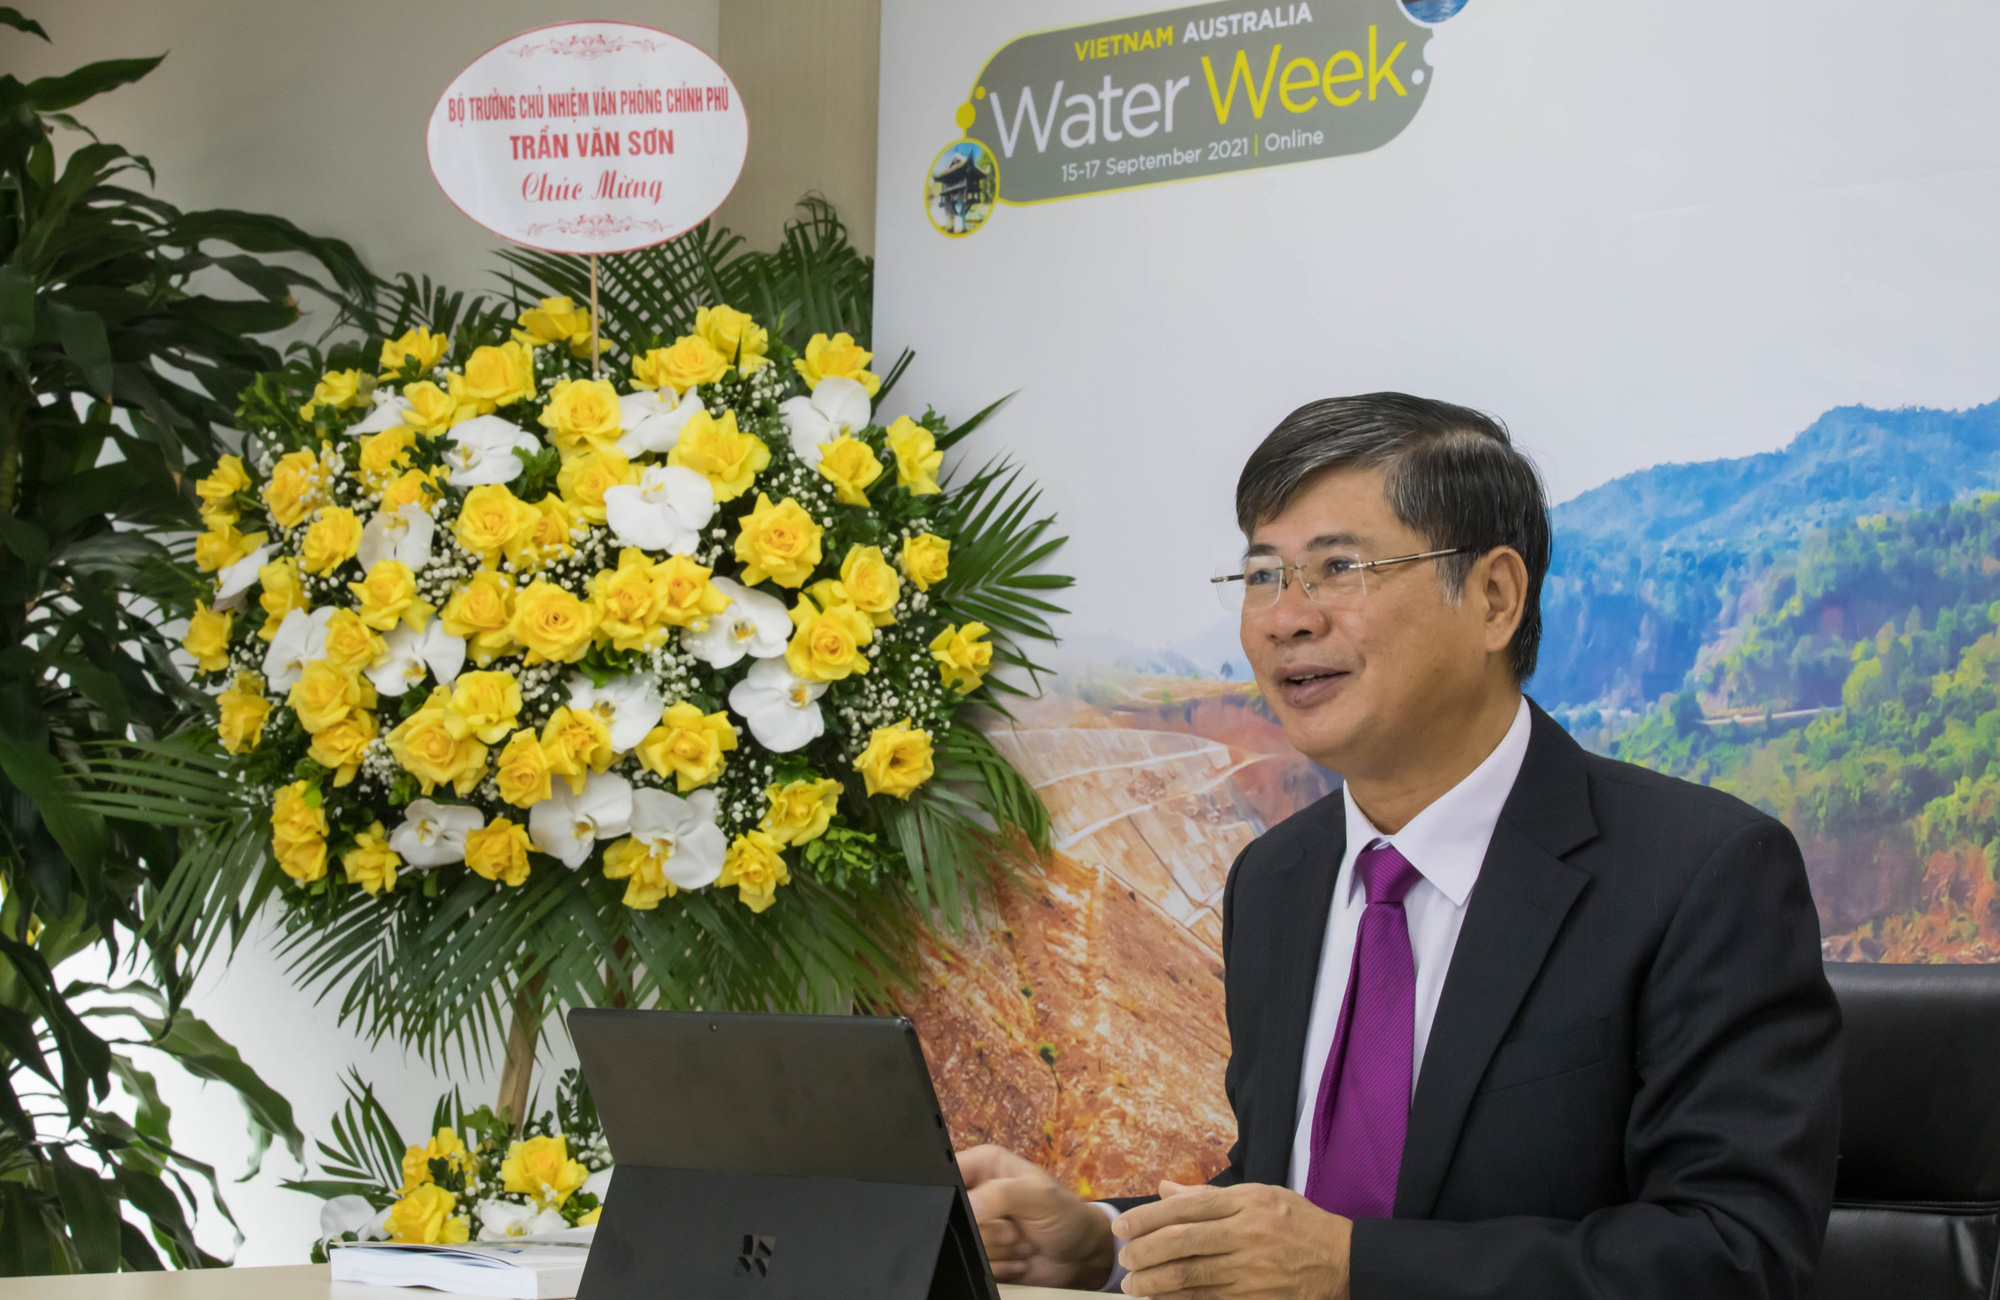 Tuần lễ ngành nước Việt Nam-Úc là sự kiện quan trọng, tạo cơ hội cho các doanh nghiệp, cơ quan chính phủ từ hai nước trao đổi kinh nghiệm và hợp tác. Những hình ảnh về tuần lễ này sẽ cho bạn thấy sự quan tâm của hai quốc gia đến vấn đề nước.